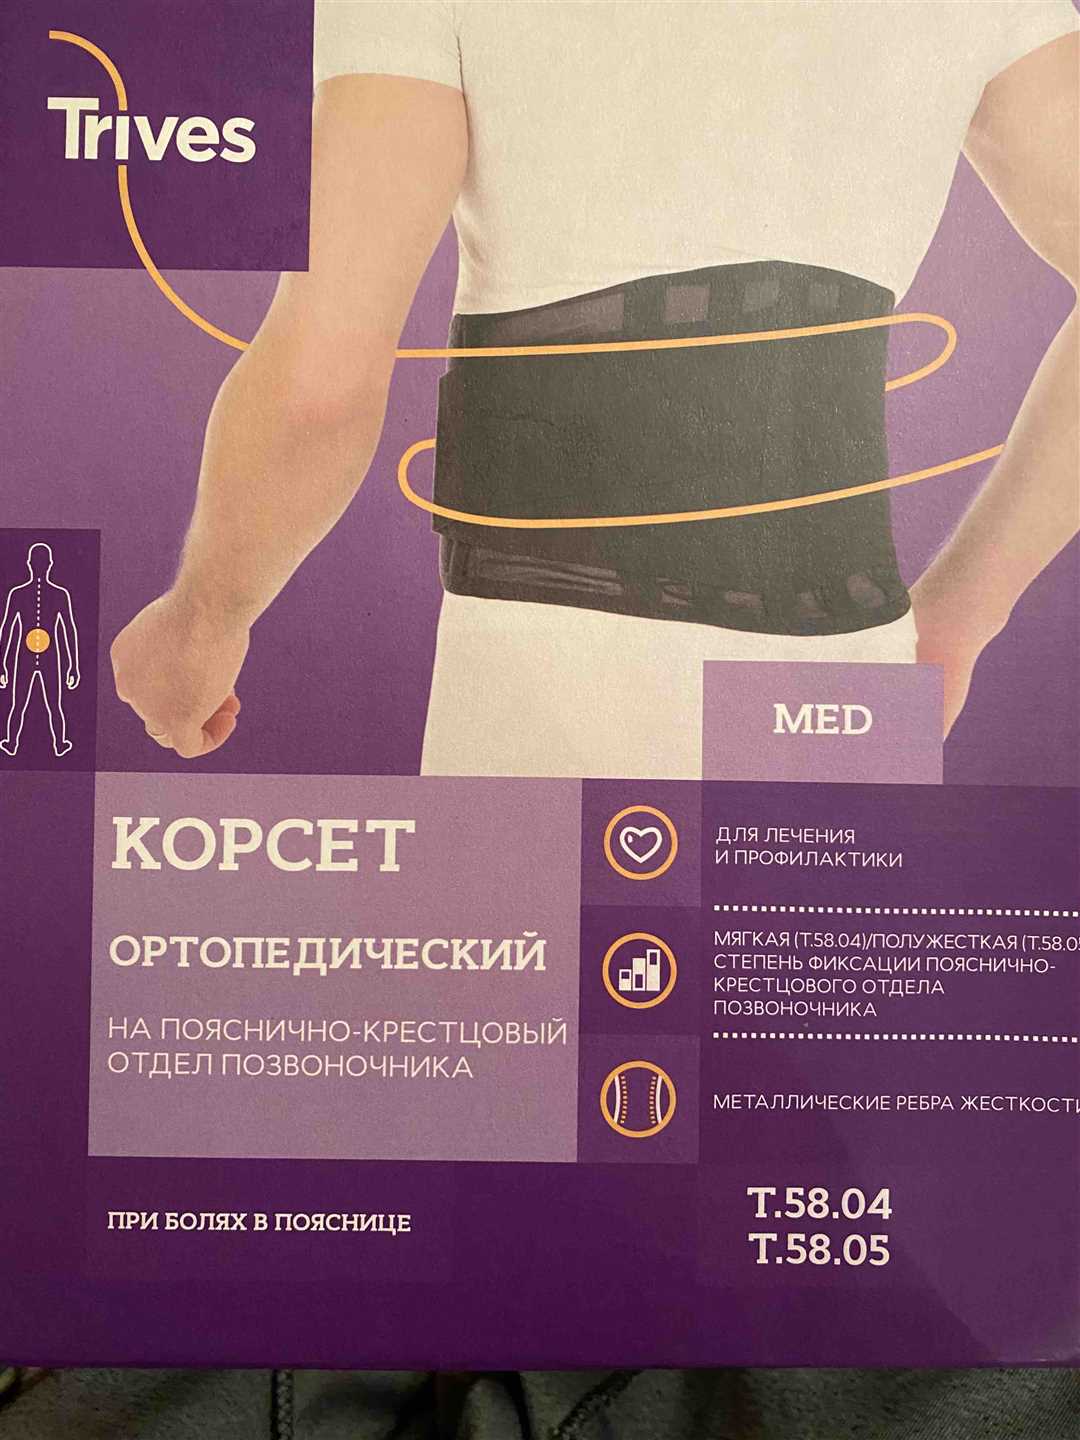 Немецкий корсет пояснично-крестцовый — идеальное средство для поддержки спины и снятия боли — все, что вам нужно знать об этом ортопедическом изделии